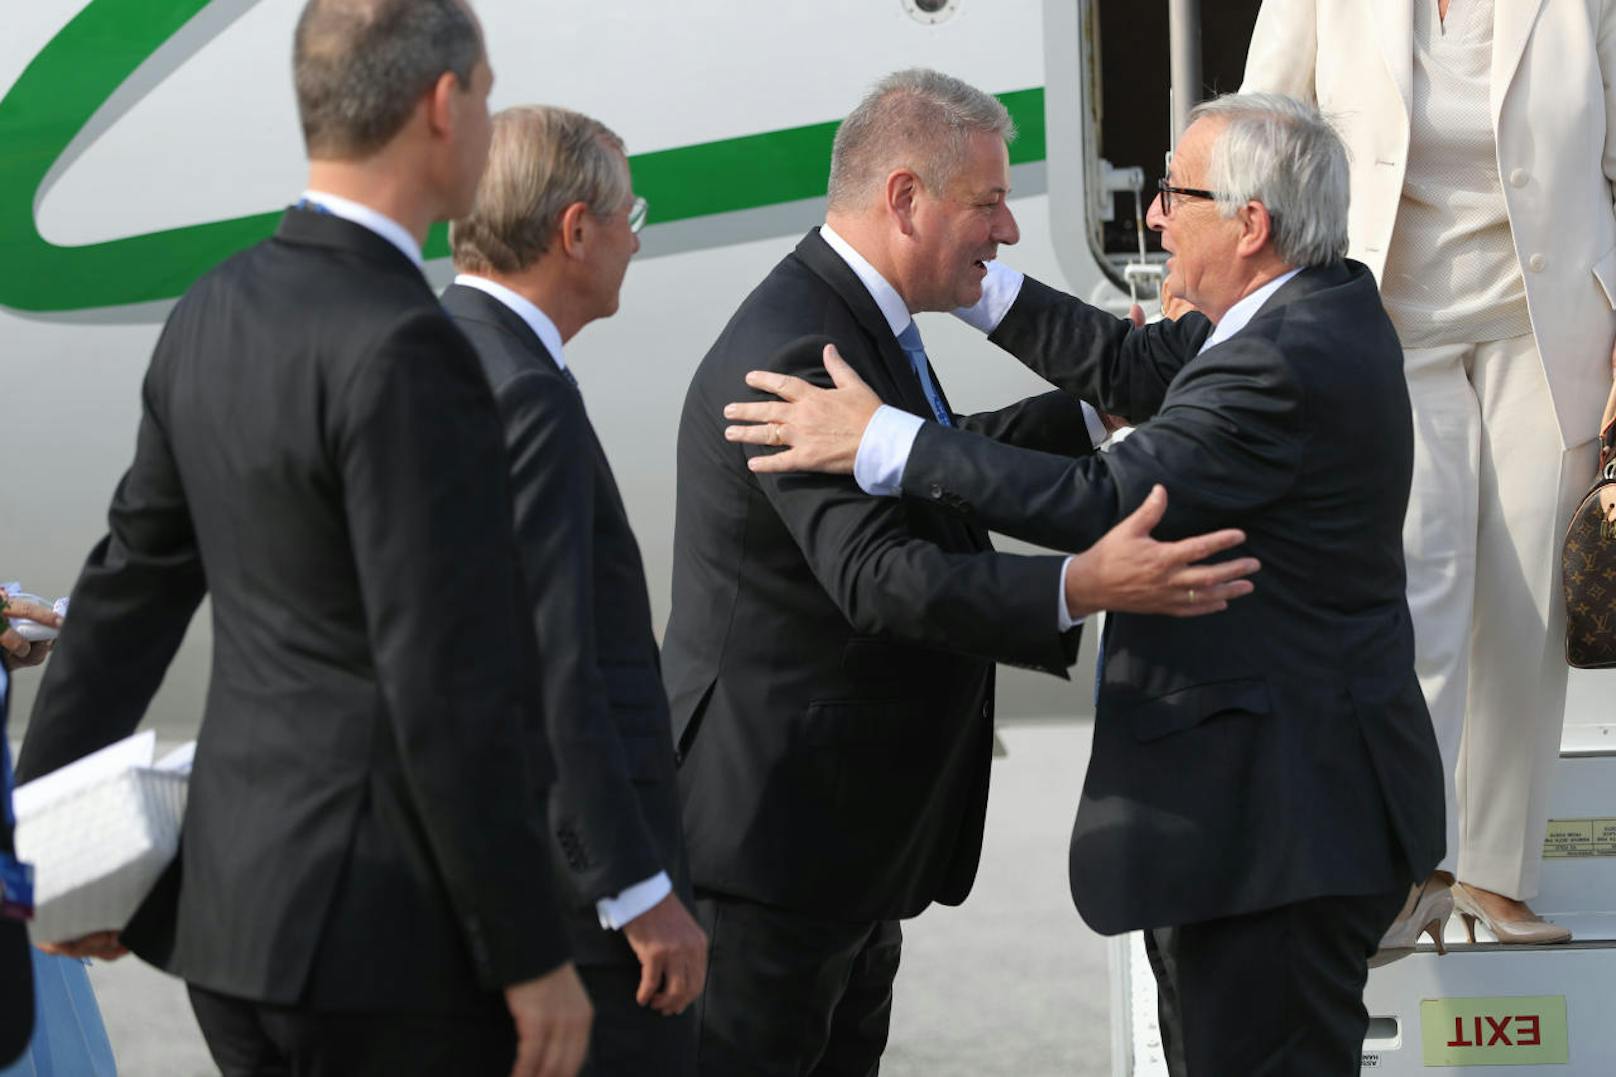 Für den Ex-Minister Andrä Rupprechter gab es Begrüßungsbussis von EU-Kommissionspräsident Jean-Claude Juncker